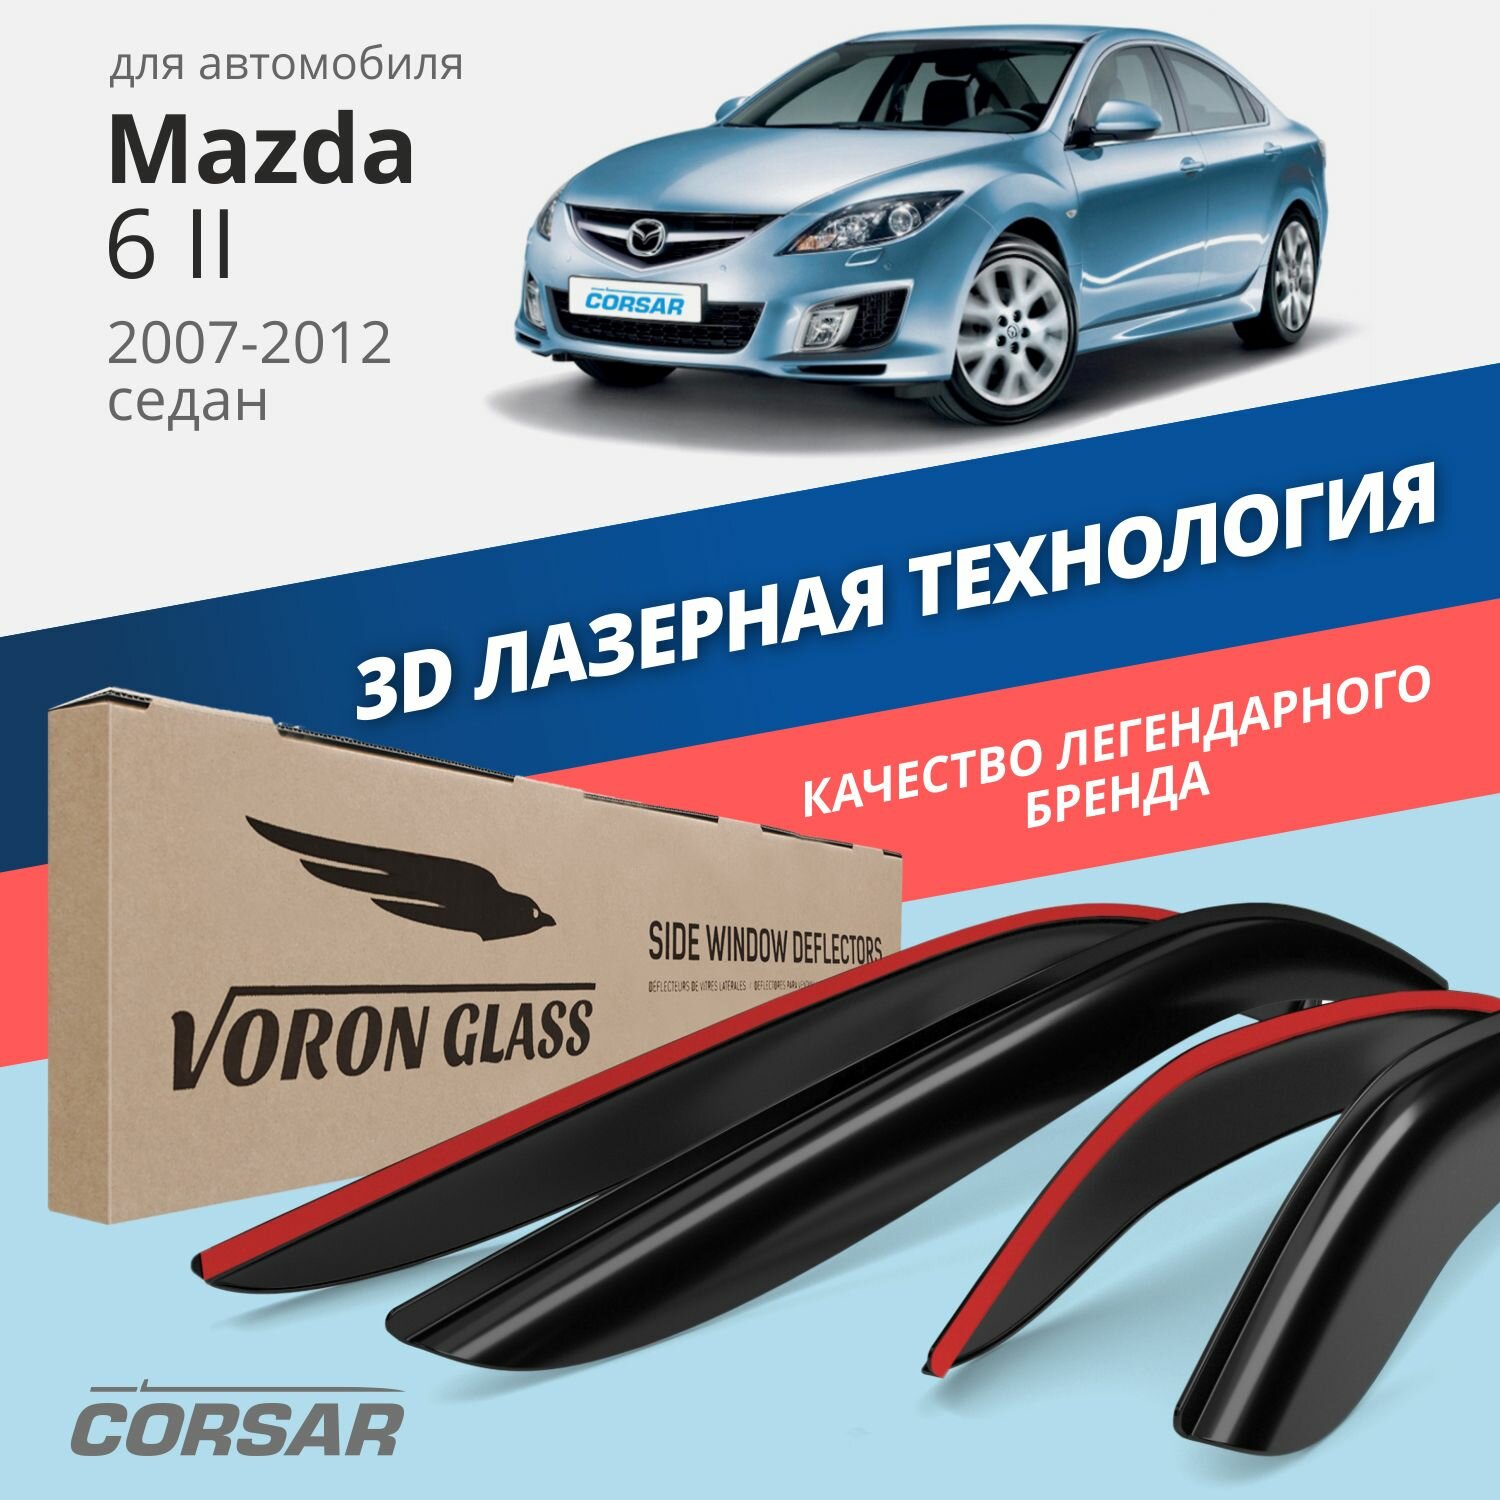 Дефлекторы окон Voron Glass серия Corsar для Mazda 6 II 2007-2012 седан накладные 4 шт.